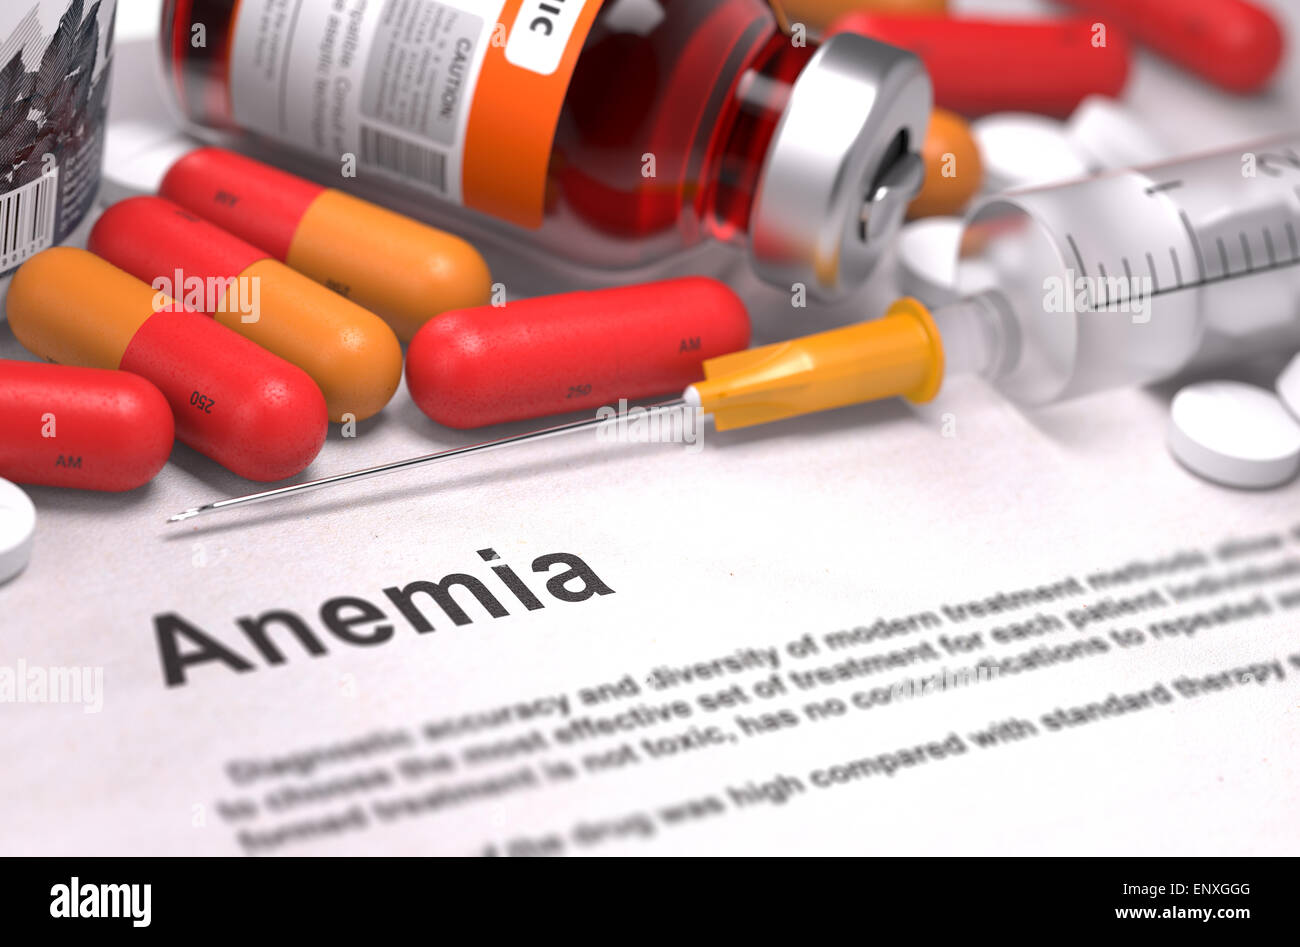 Diagnosis - Anemia. Medical Concept. Stock Photo